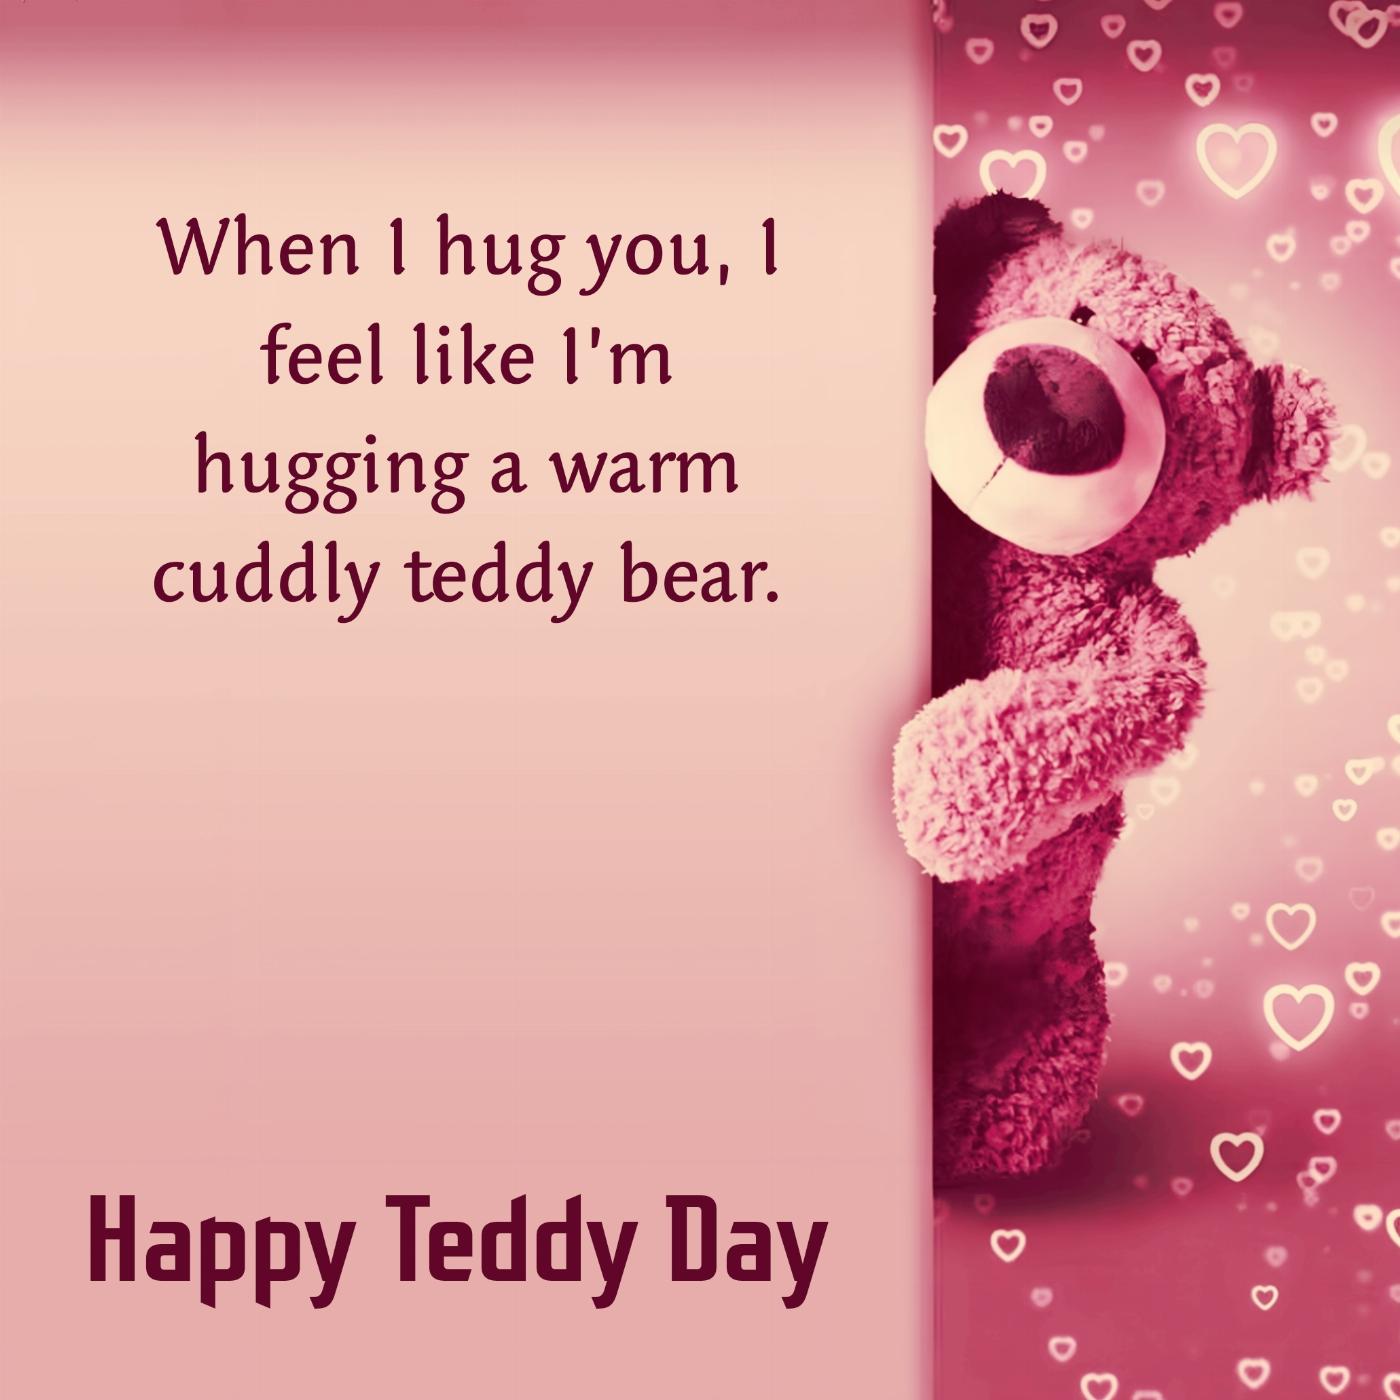 When I hug you I feel like Im hugging a warm cuddly teddy bear